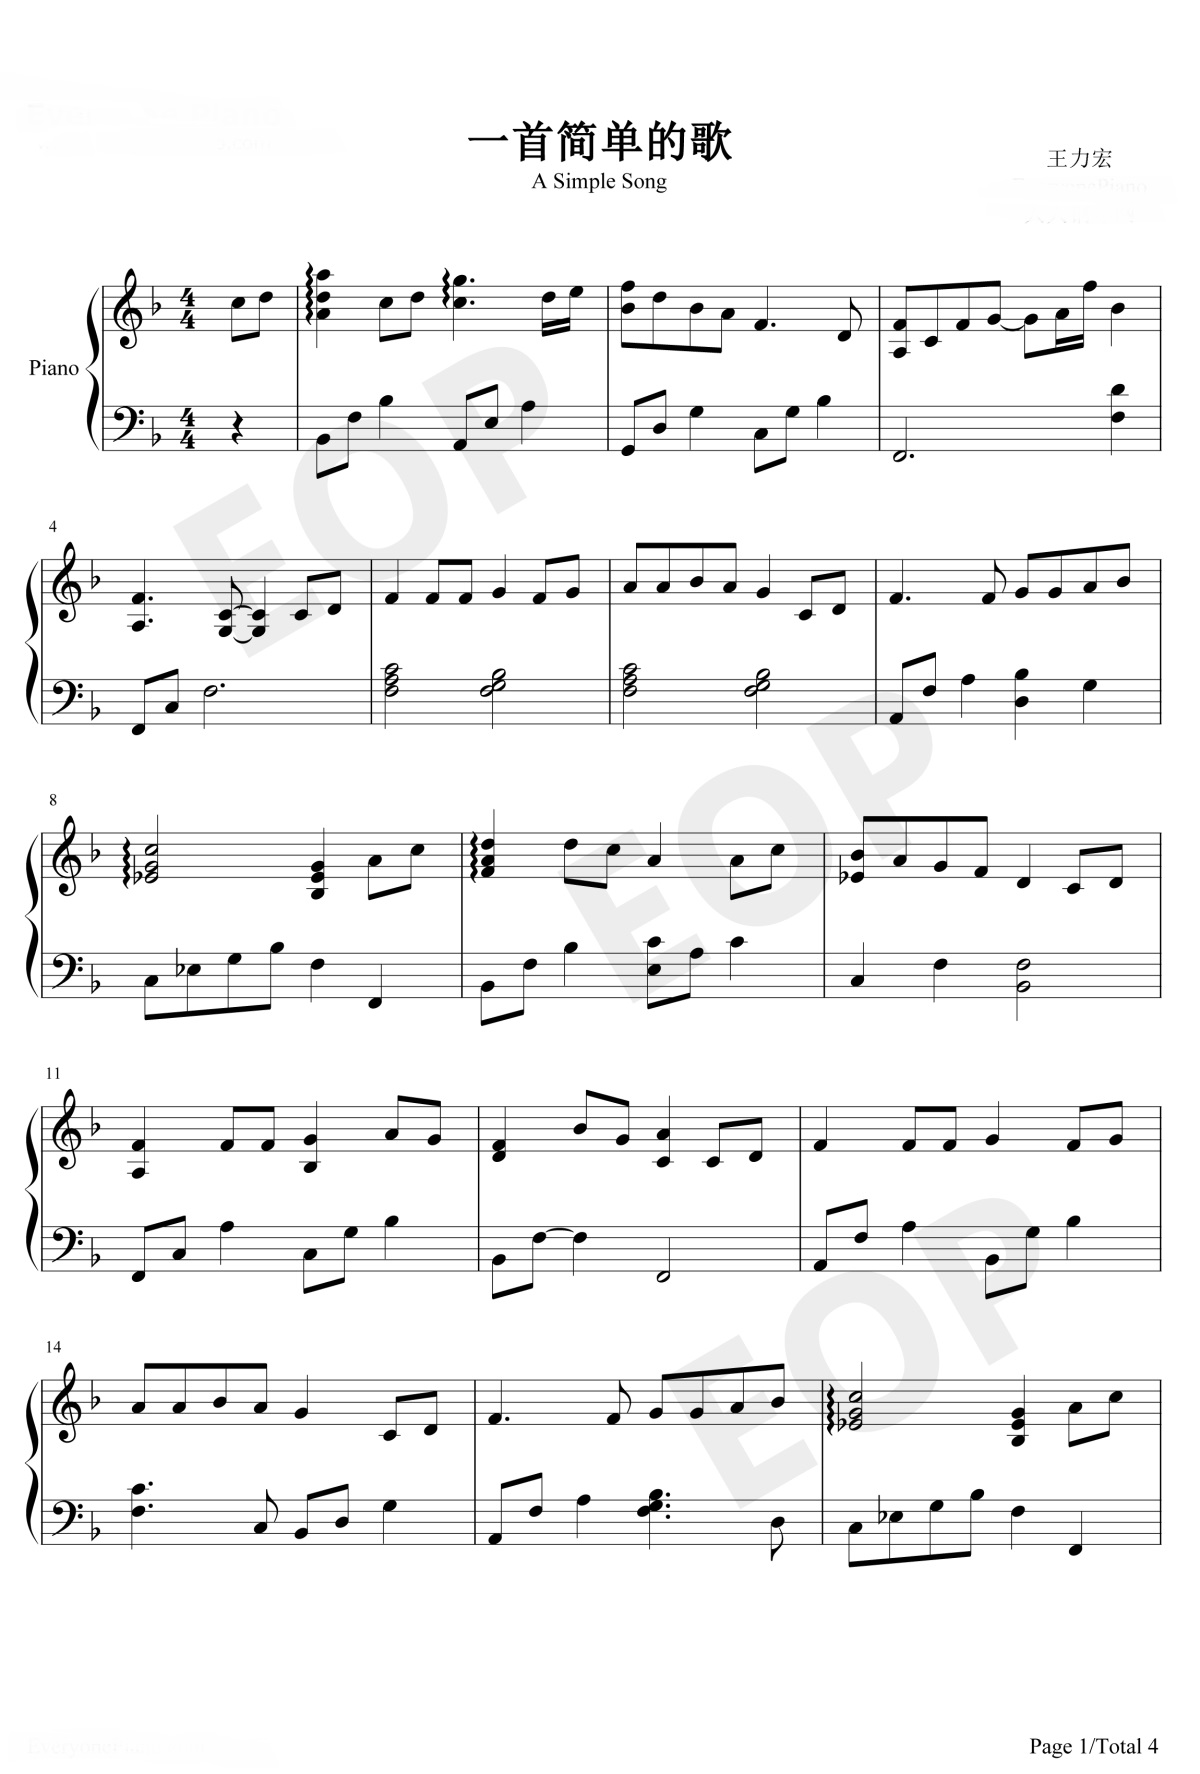 【一首简单的歌】的钢琴谱简谱 – 王力宏